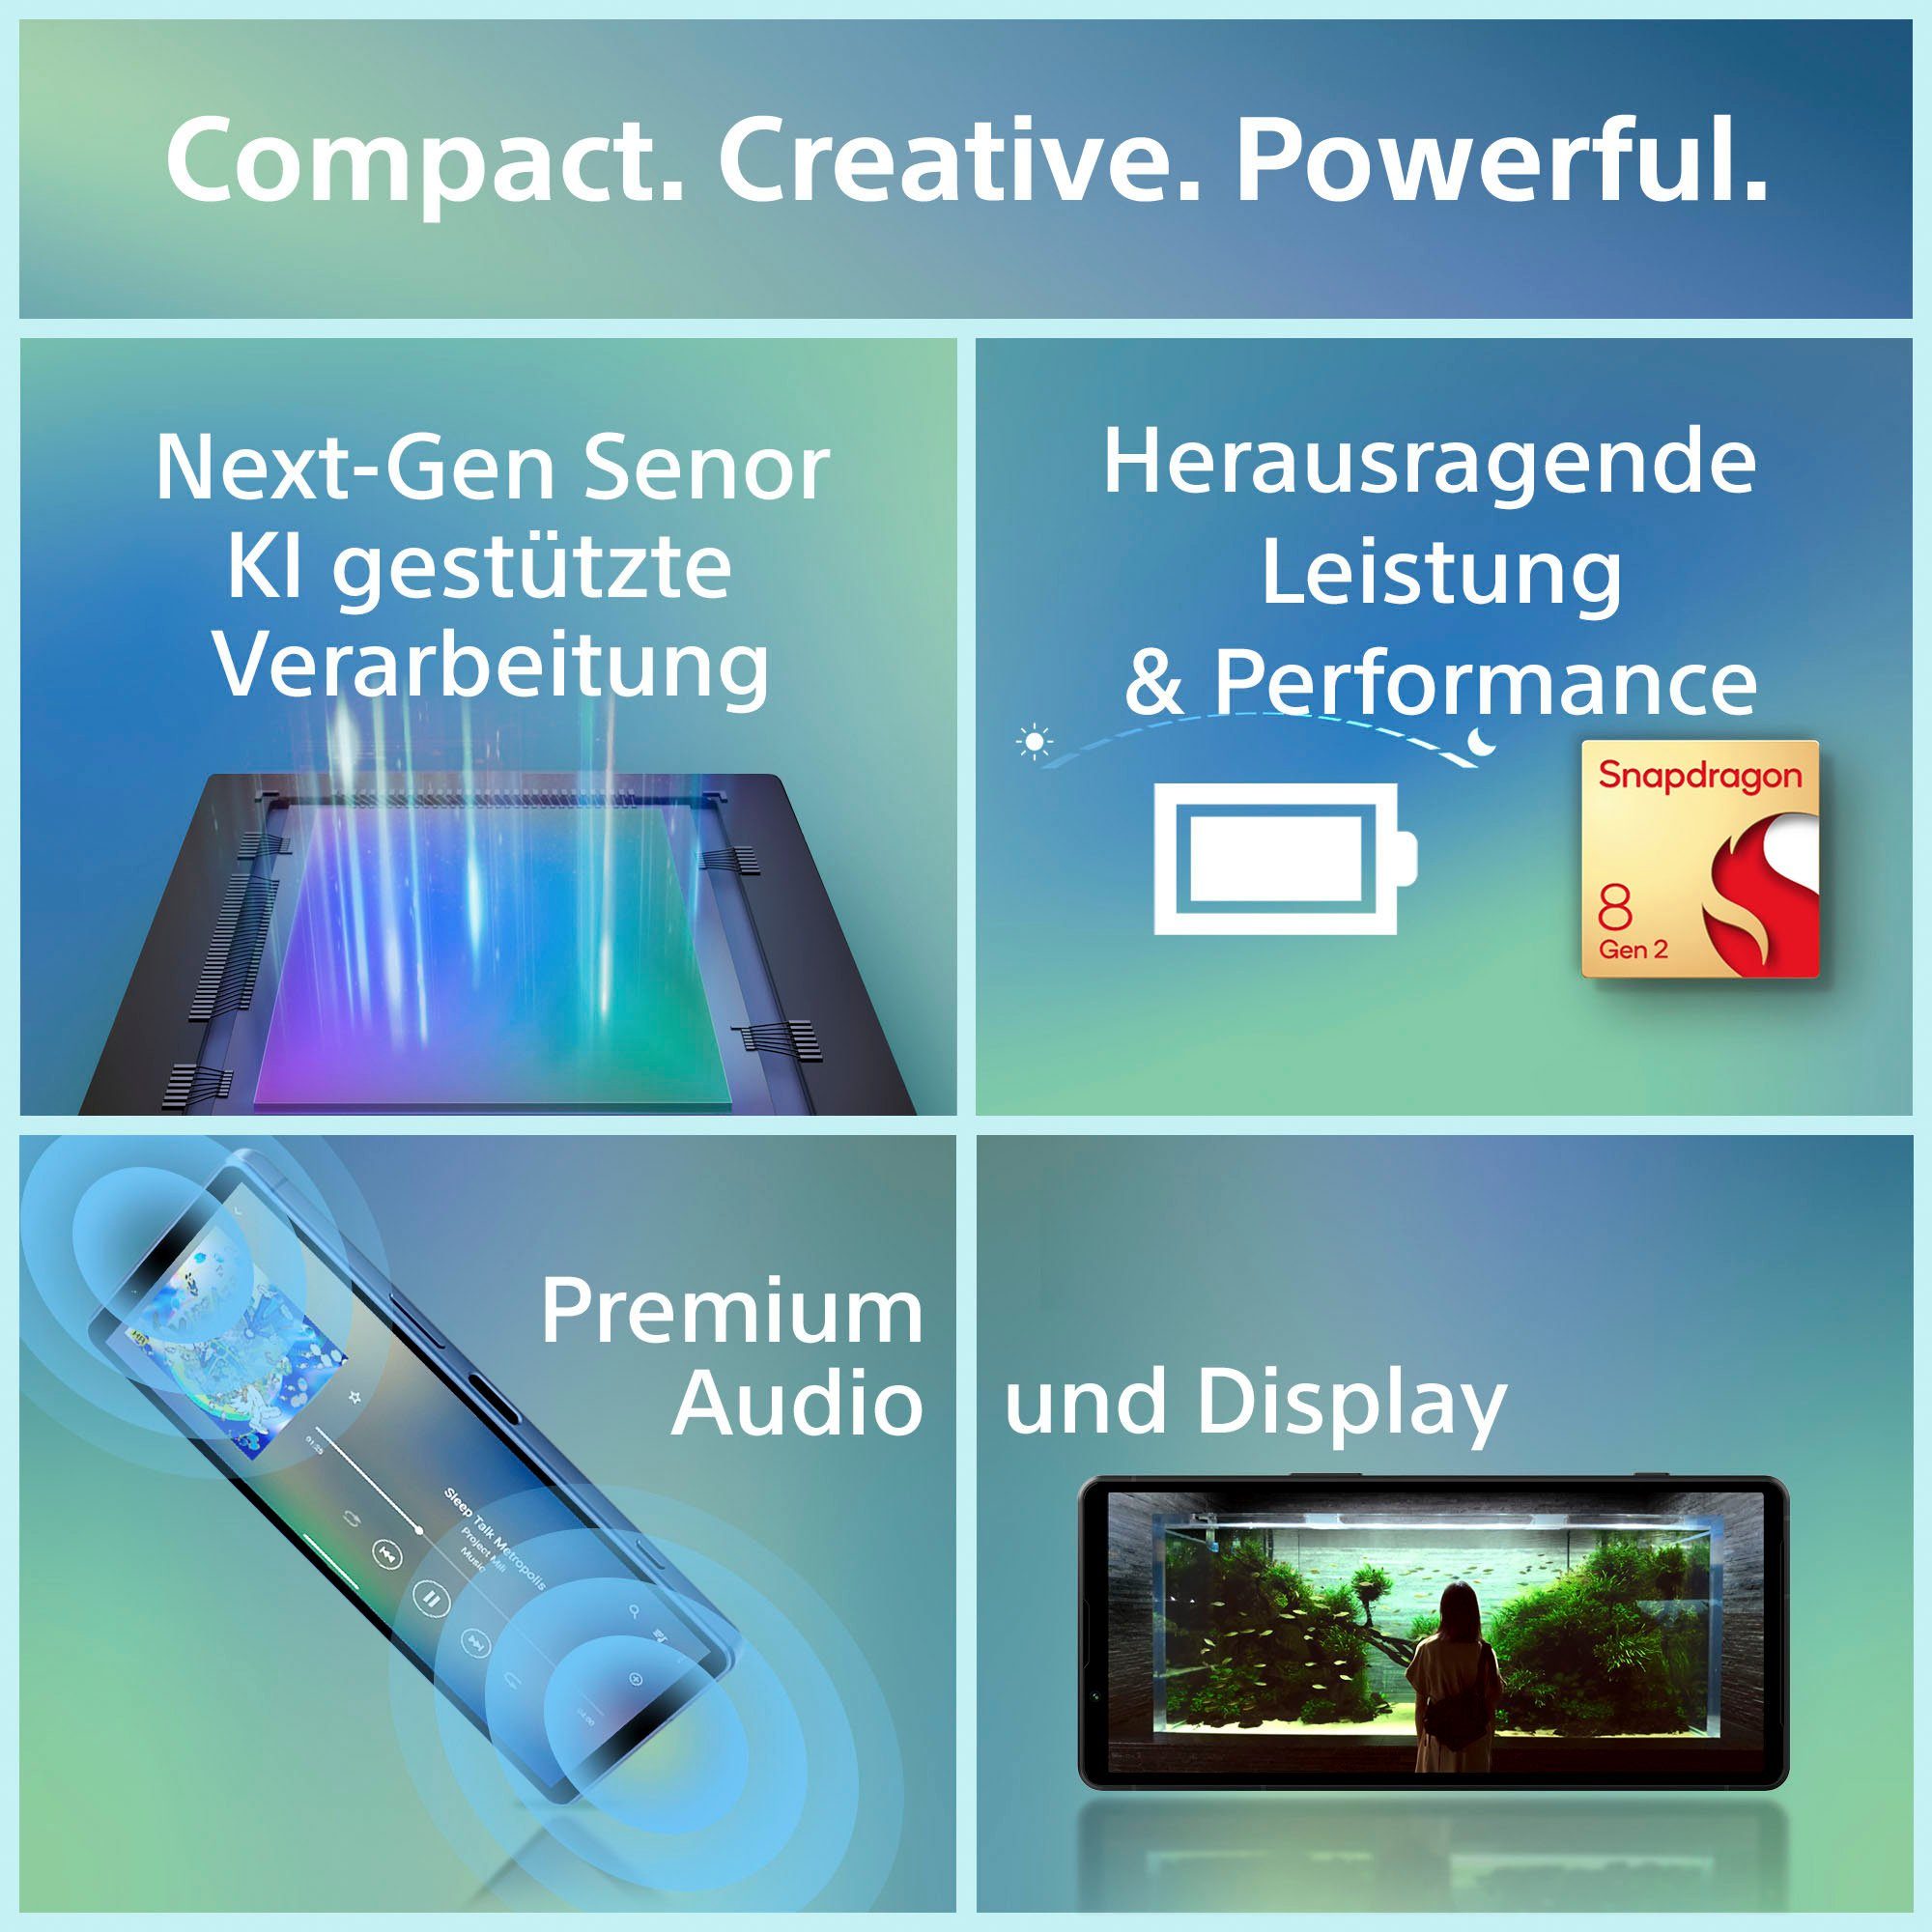 Sony XPERIA 12 GB Zoll, 5V platin-silber cm/6,1 Speicherplatz, (15,49 Kamera) 128 MP Smartphone